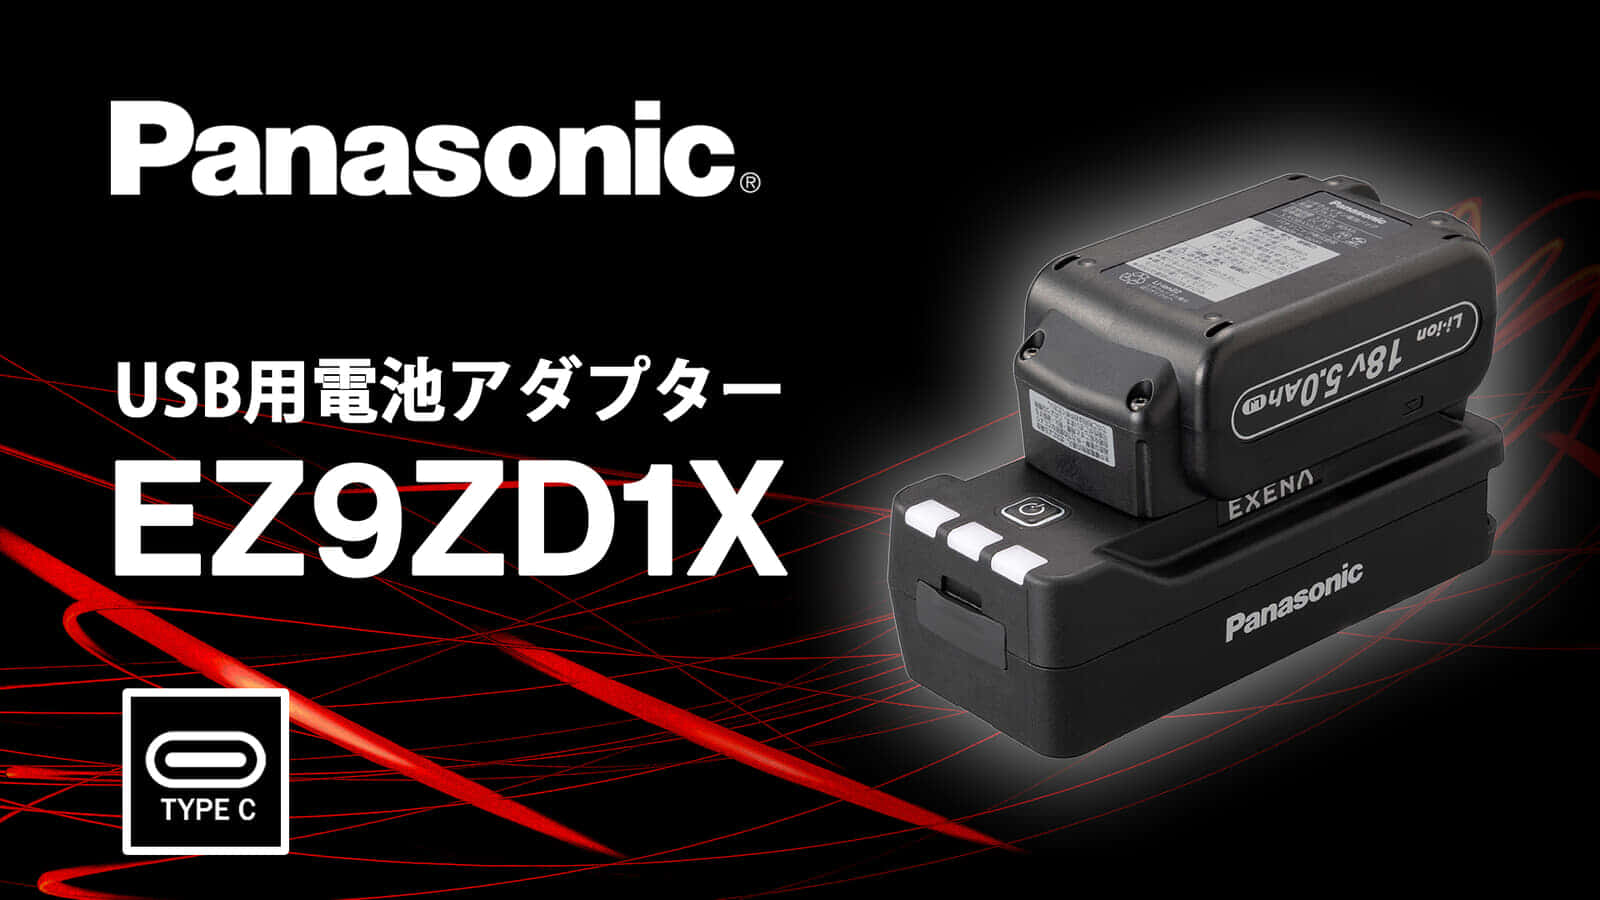 パナソニック EZ9ZD1X USB用電池アダプターを発売、パナバッテリー対応のUSB PD対応充電器